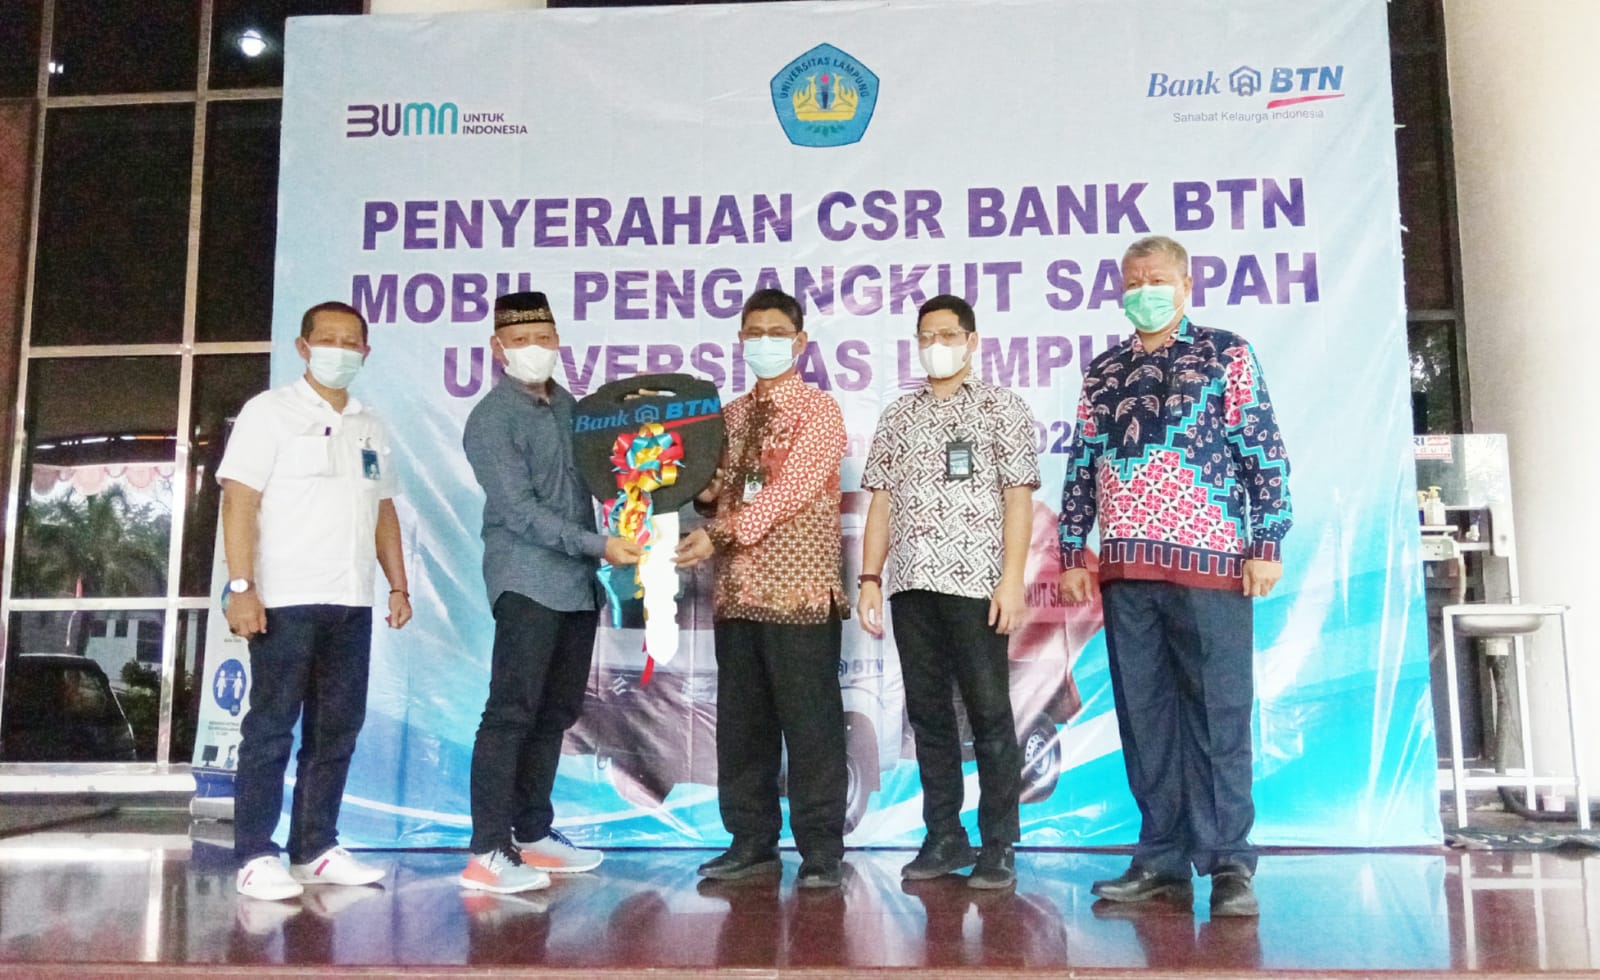 Penyerahan CSR Bank BTN Mobil Pengangkut Sampah ke Universitas Lampung